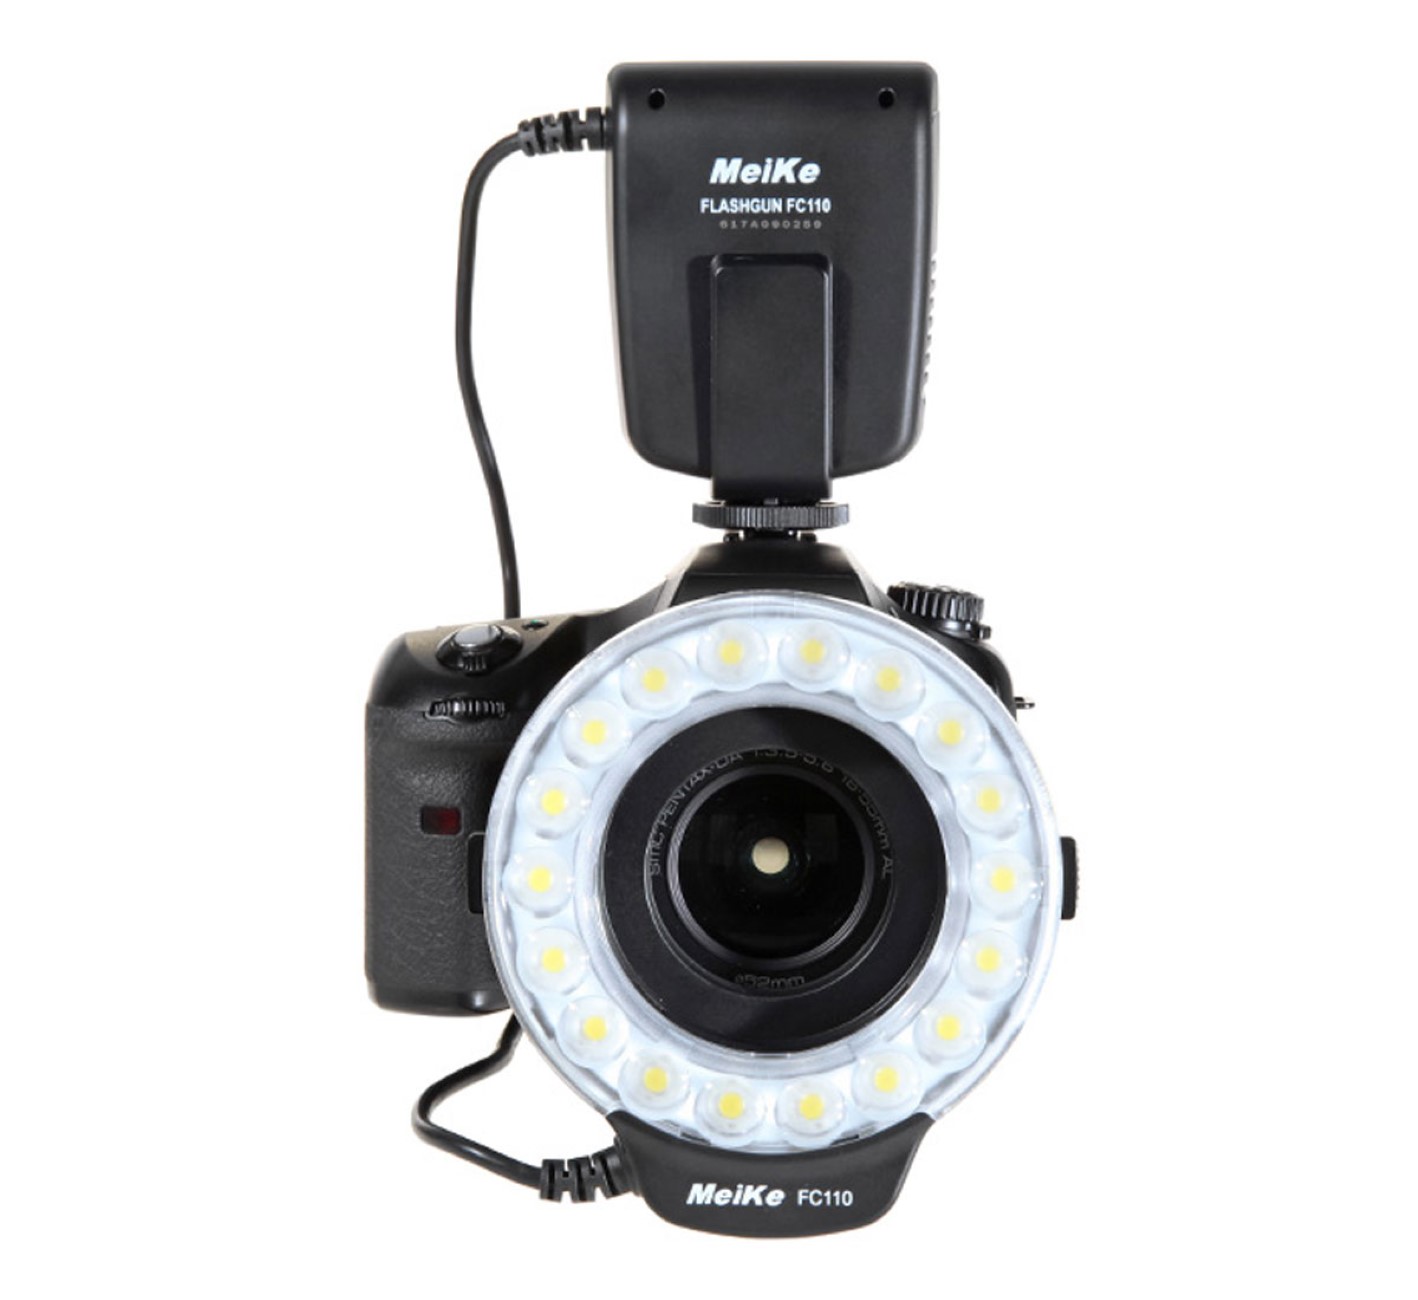 Makro Ringblitz Ringleuchte für Pentax SLR Kameras FC-110 Blitz & Dauerlicht auch für Videoaufnahmen